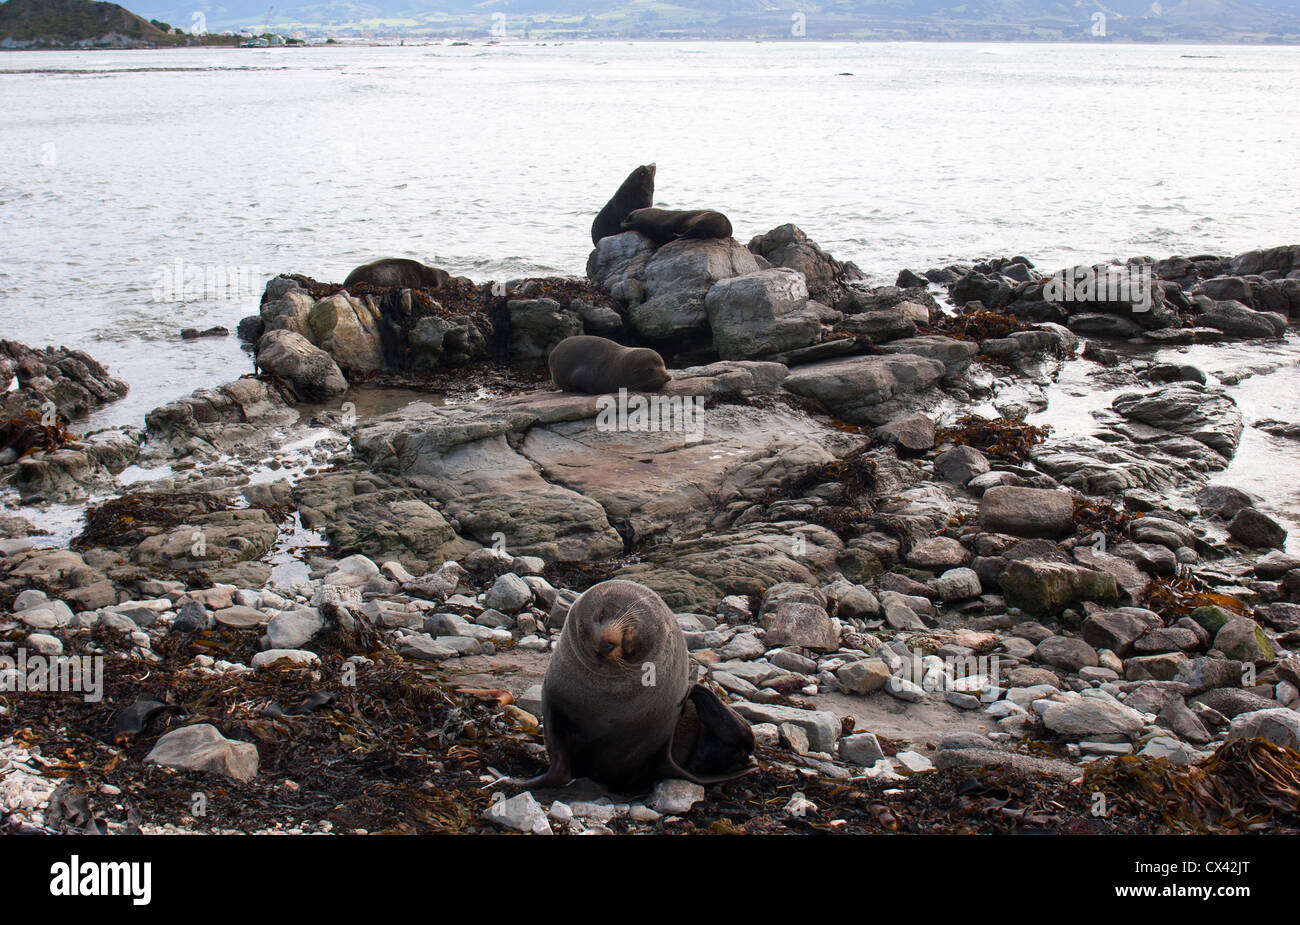 Uno sguardo alla vita in Nuova Zelanda: Foche di pelliccia sulle rocce, sul mare (Kaikoura). Foto Stock